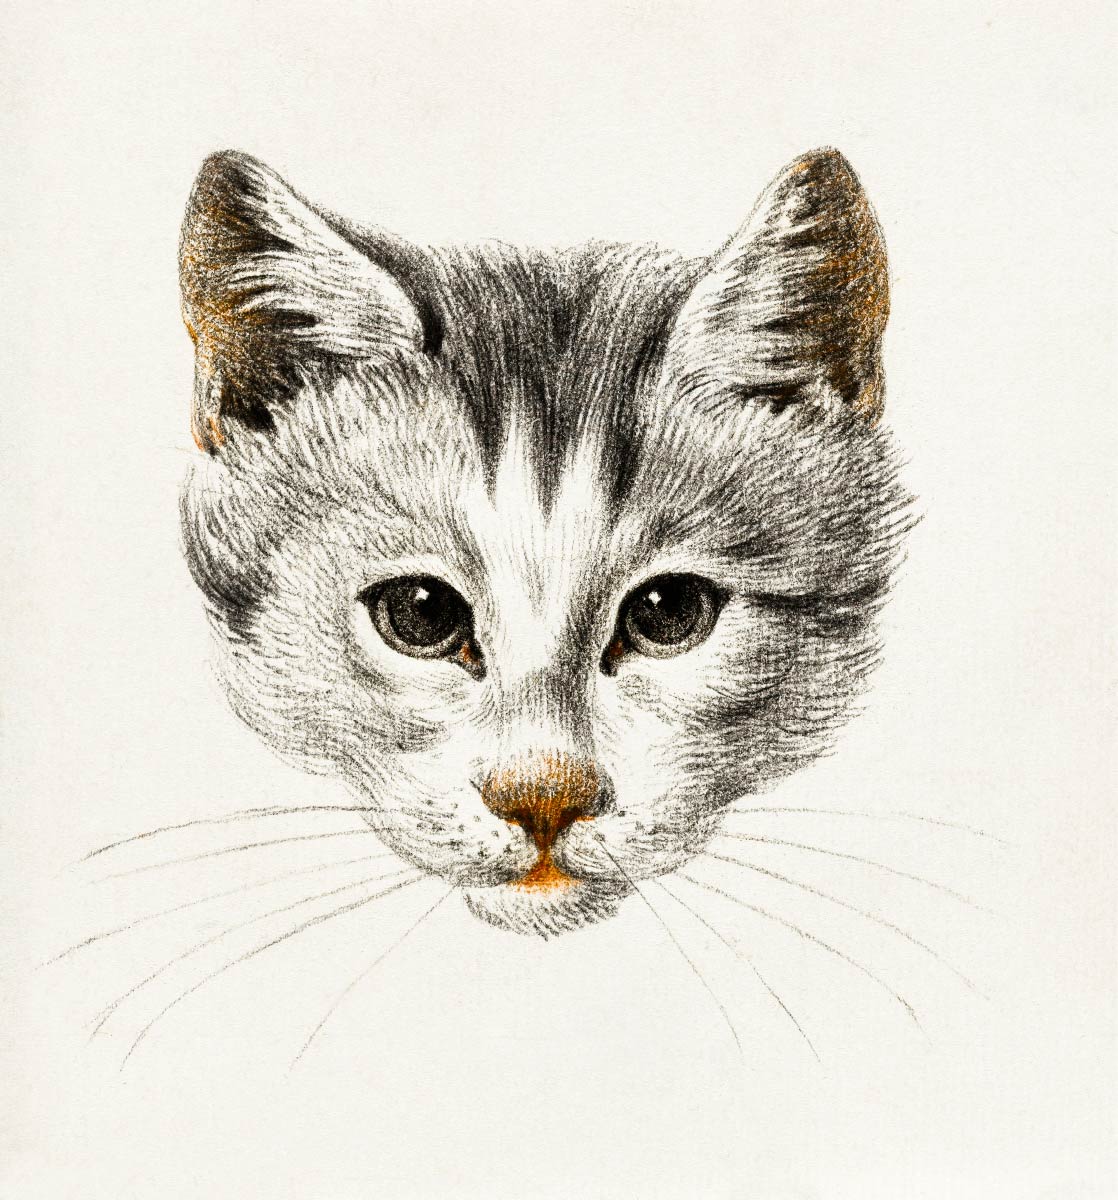 【無料壁紙】ジャン・ベルナール「猫のスケッチ-正面 (1812)」 / Jean Bernard_Sketch of a cat (1812)